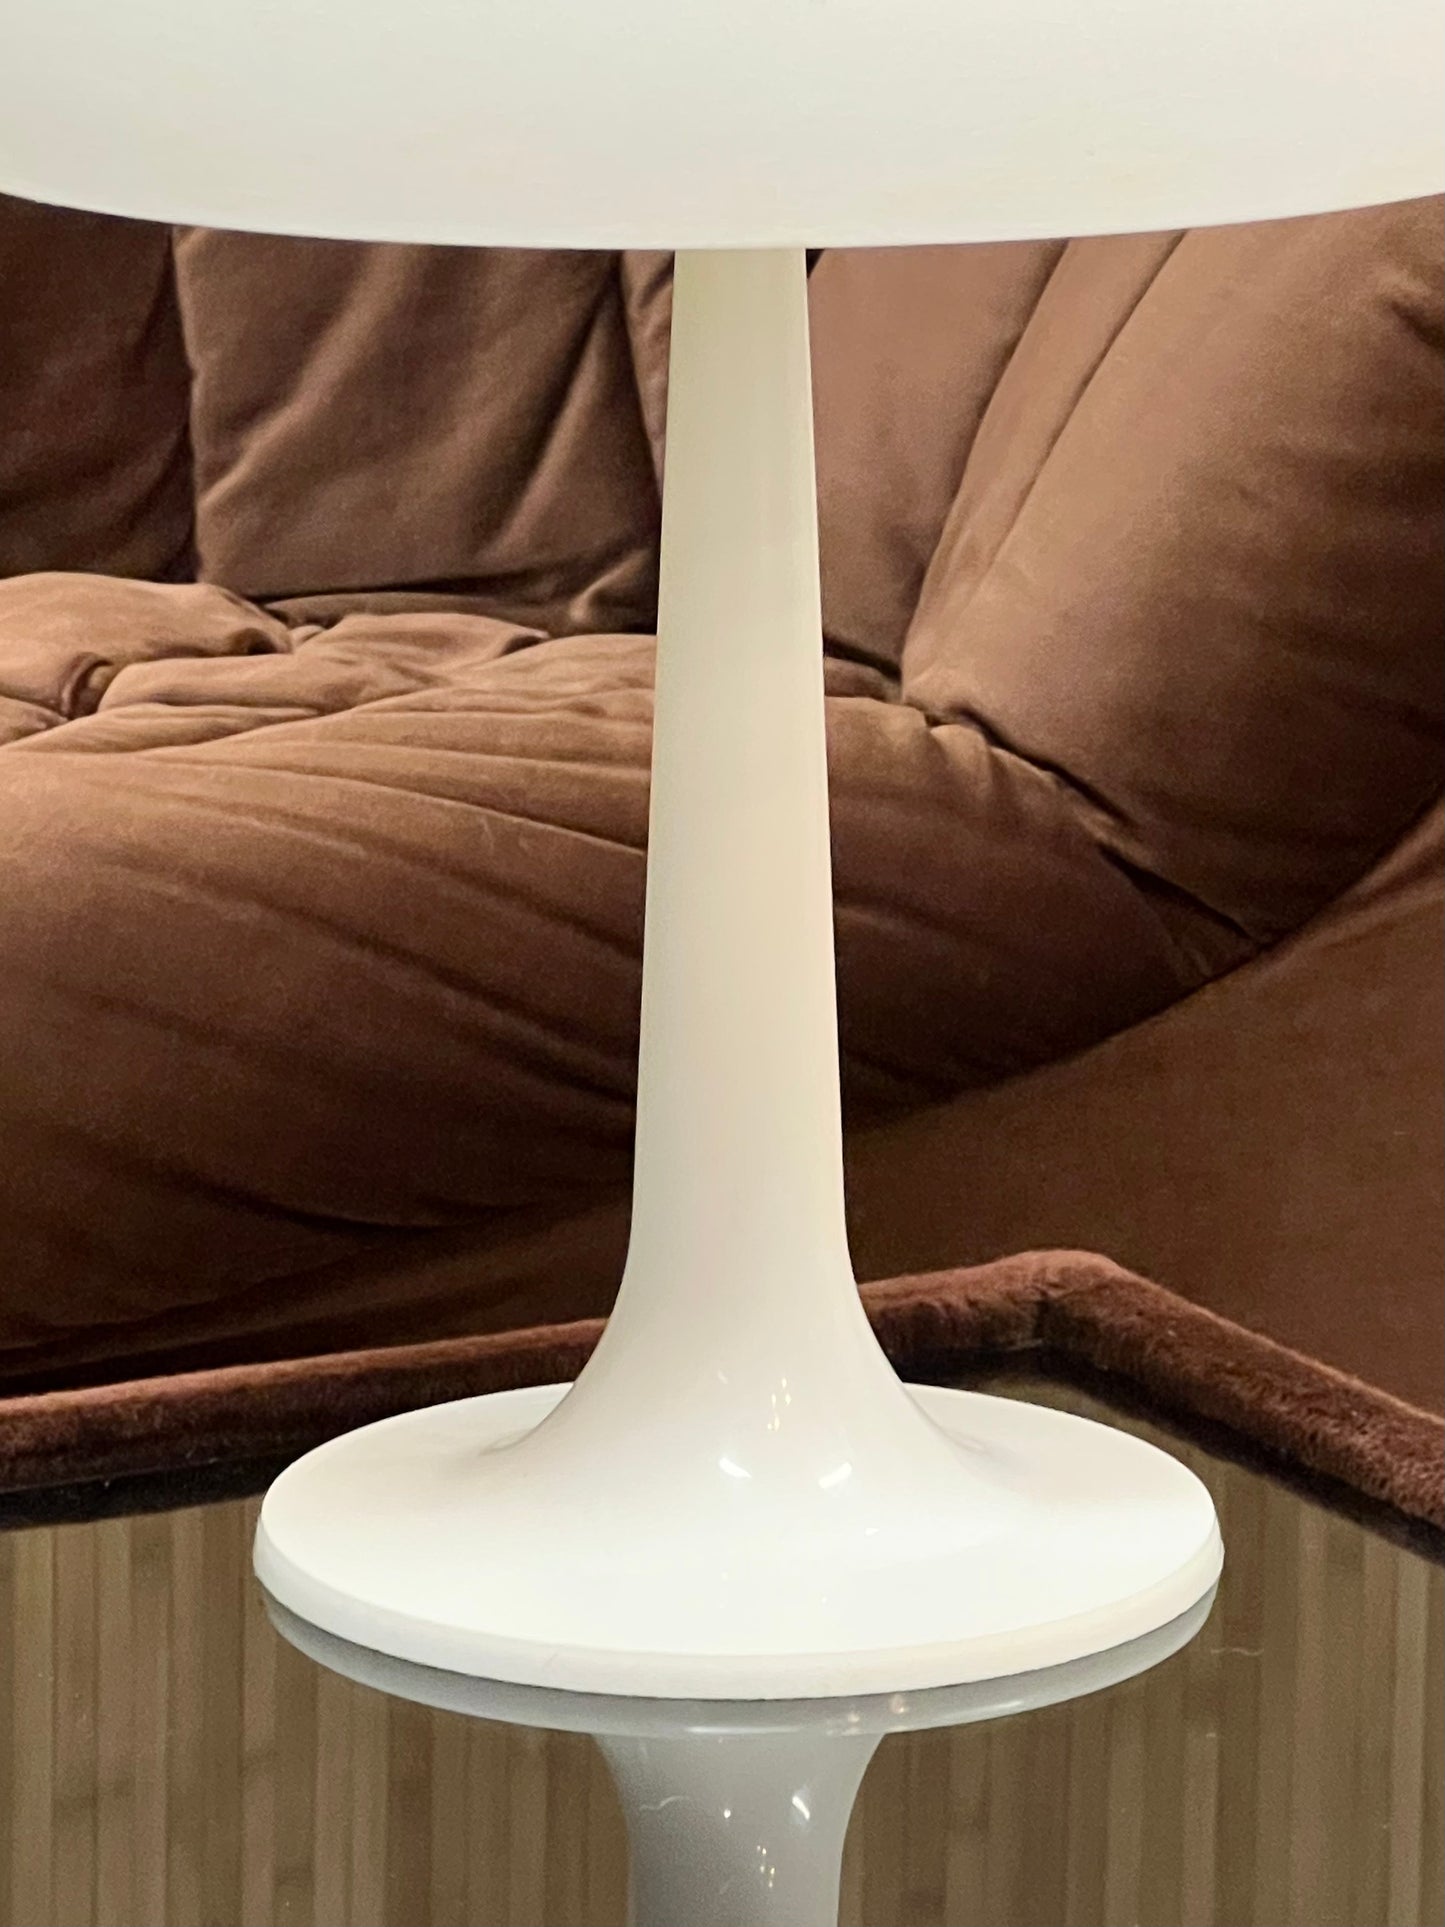 Plastic 70s Mushroom Lamp